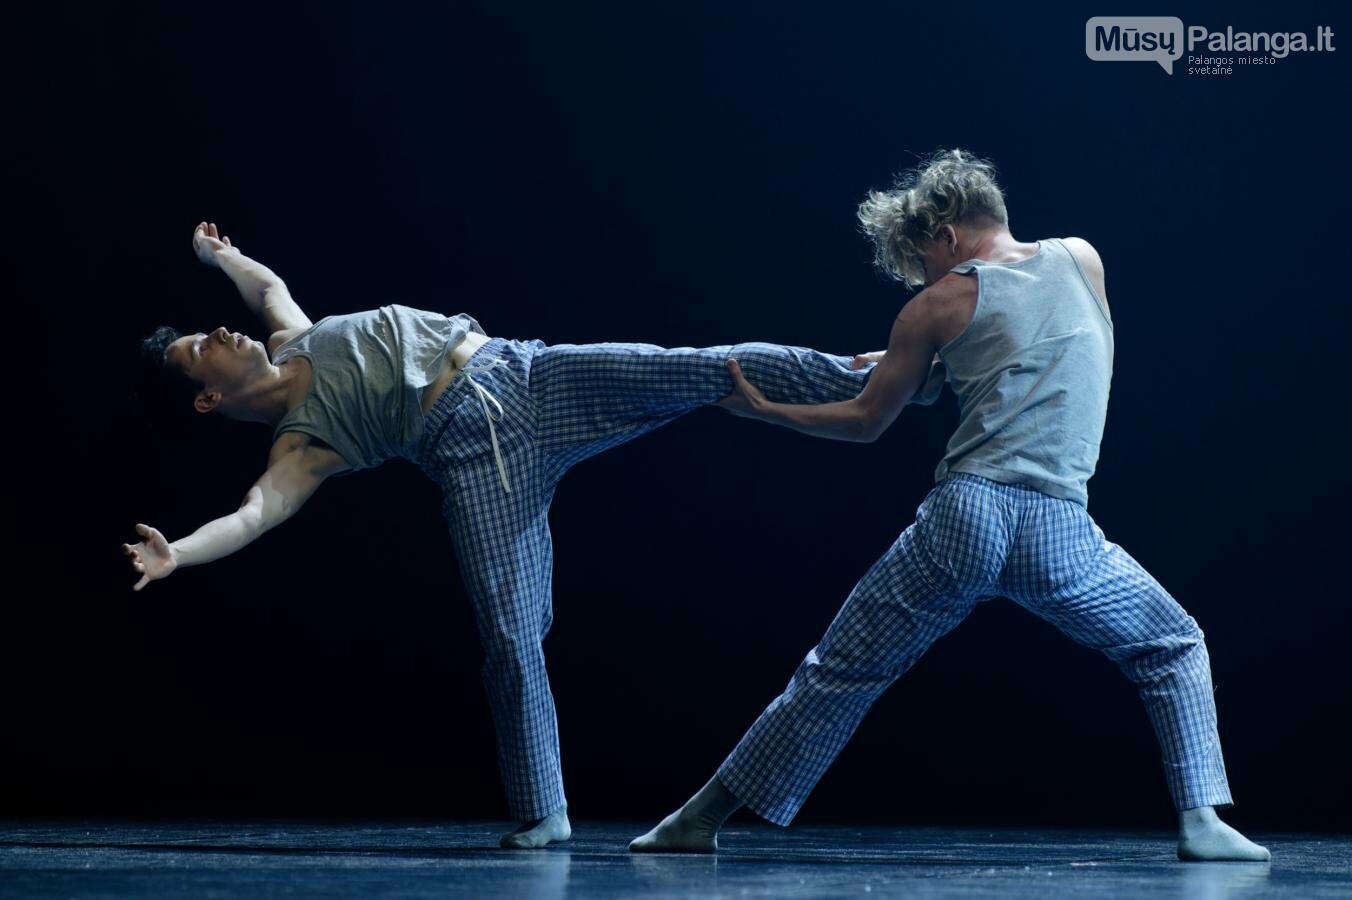 Choreografo R.Bondaros choreografinė kompozicija „Žagsulys“ (Hiccup). Martyno Aleksos nuotr.